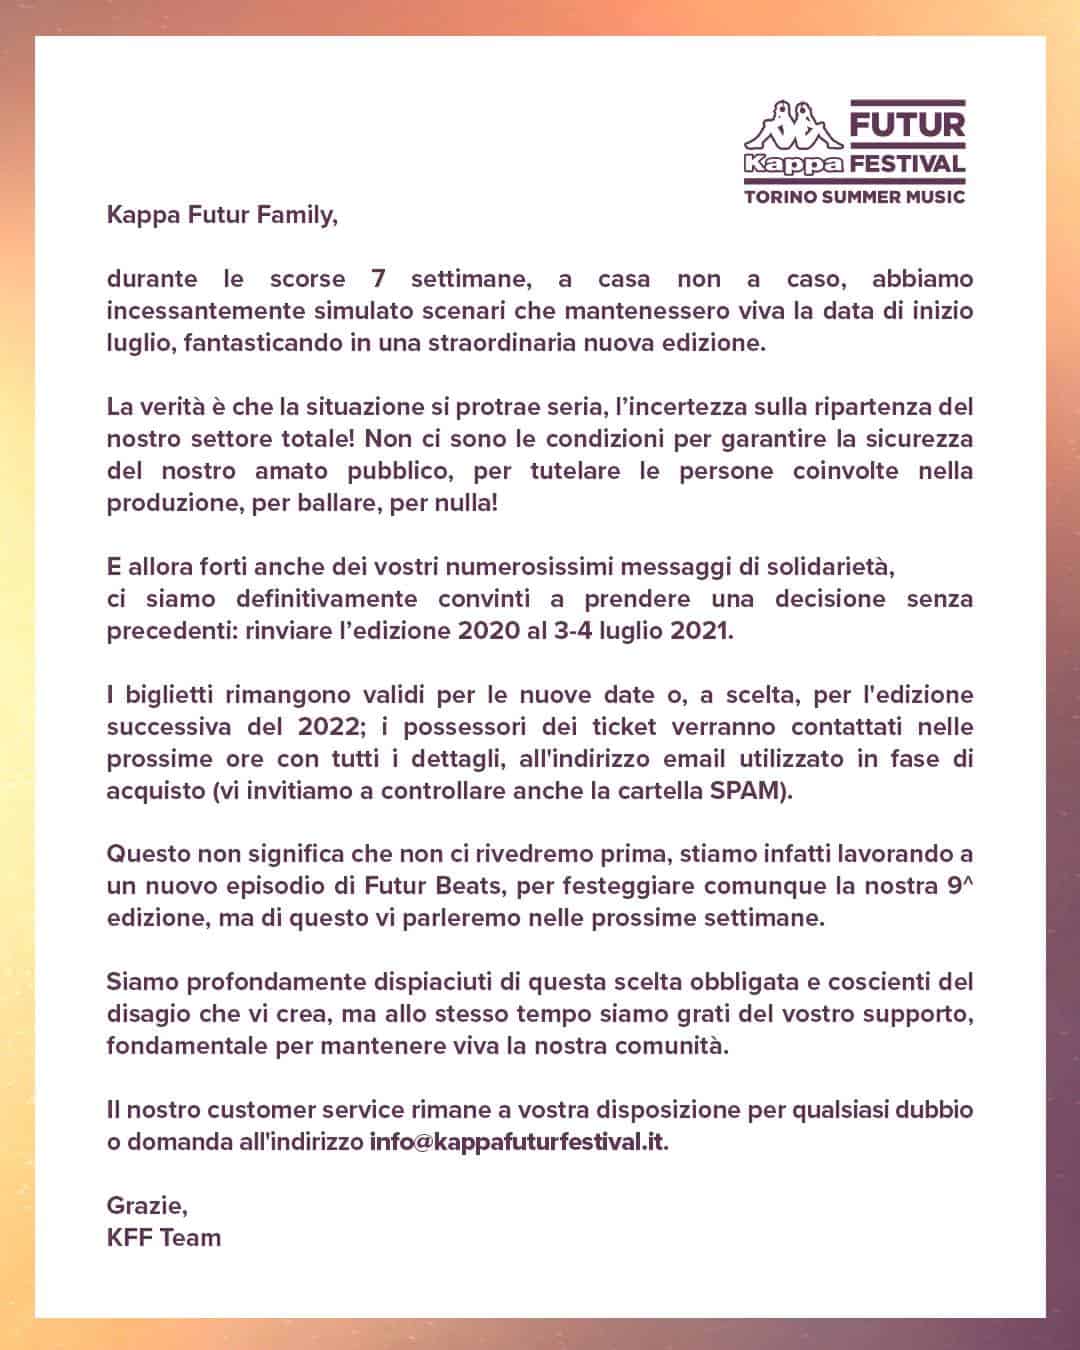 Kappa FuturFestival 2020 - Comunicato